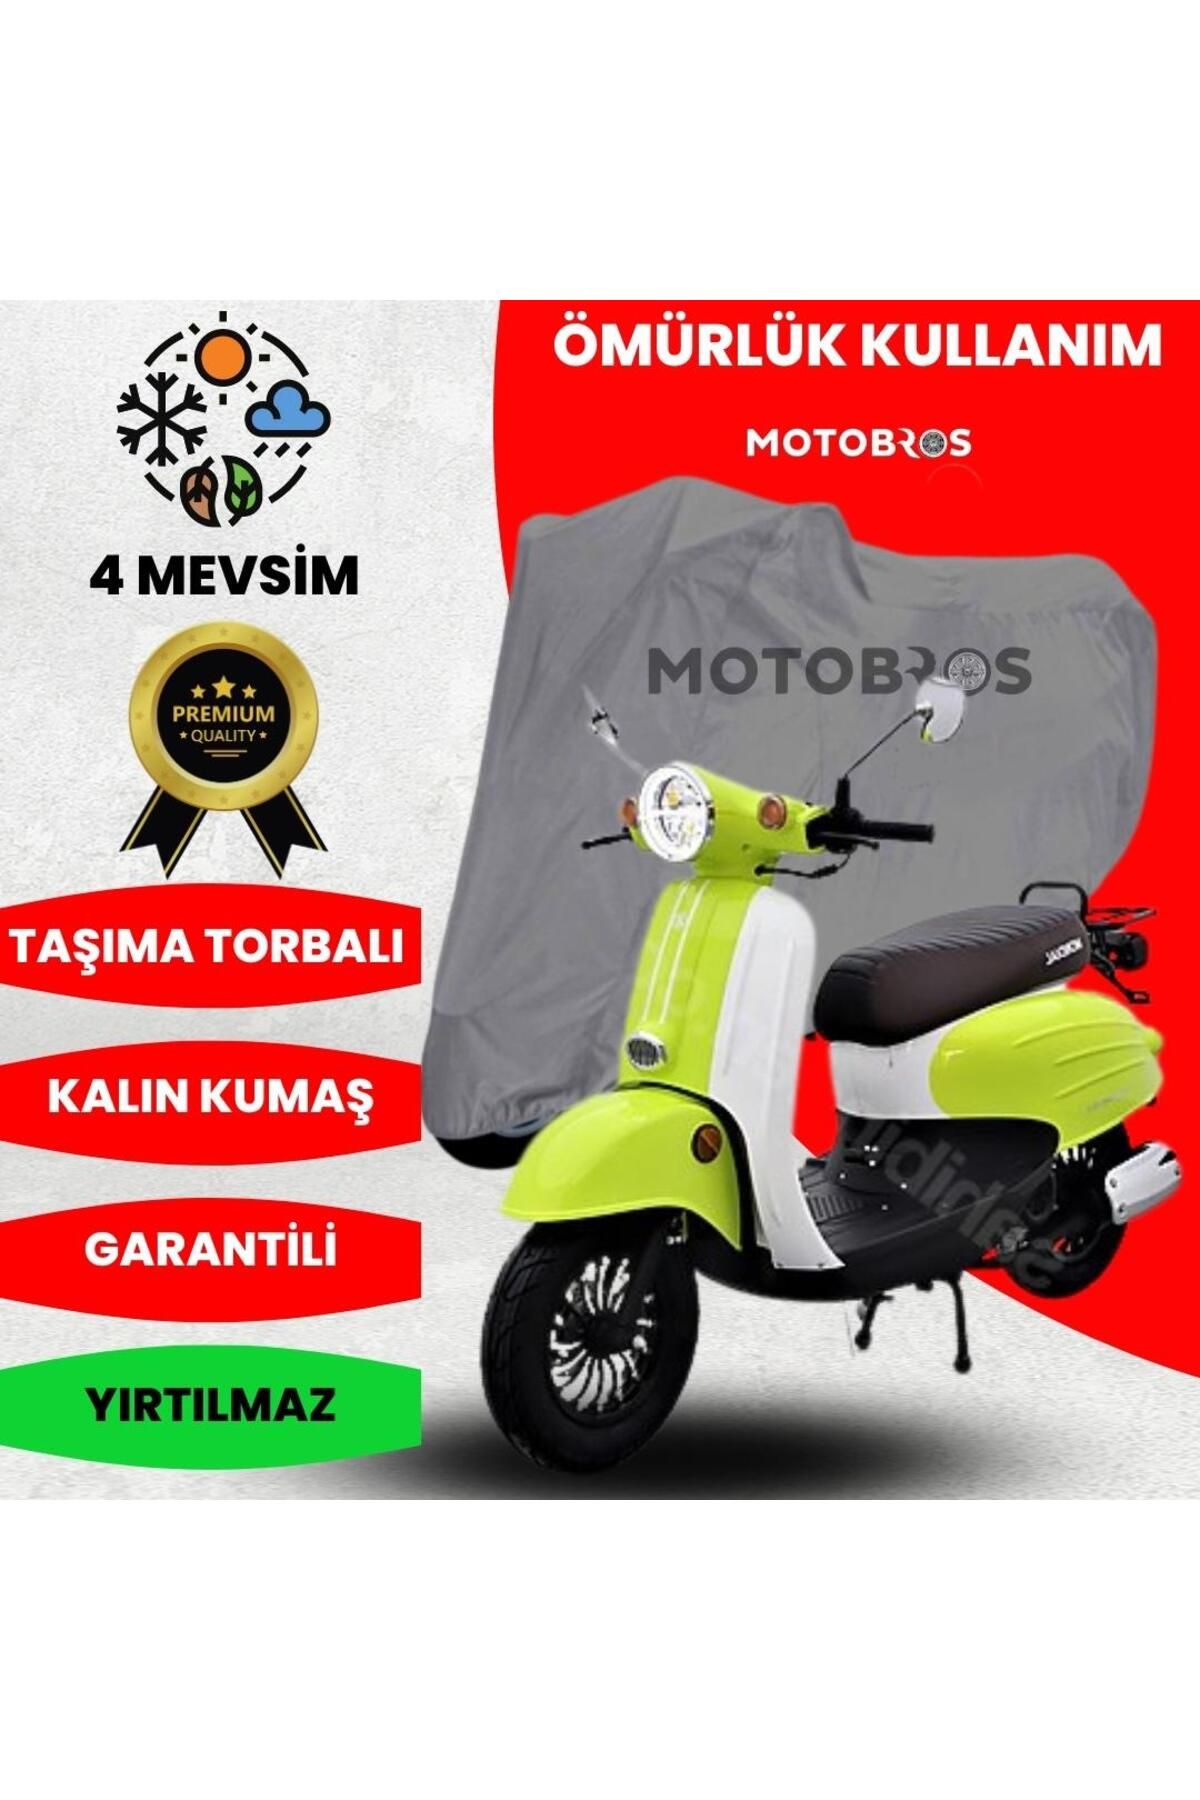 Motobros MONDİAL TURİSMO MOTOSİKLET BRANDA (EN KALIN) KUMAŞ ÖMÜRLÜK KULLANIM (TOKALI)